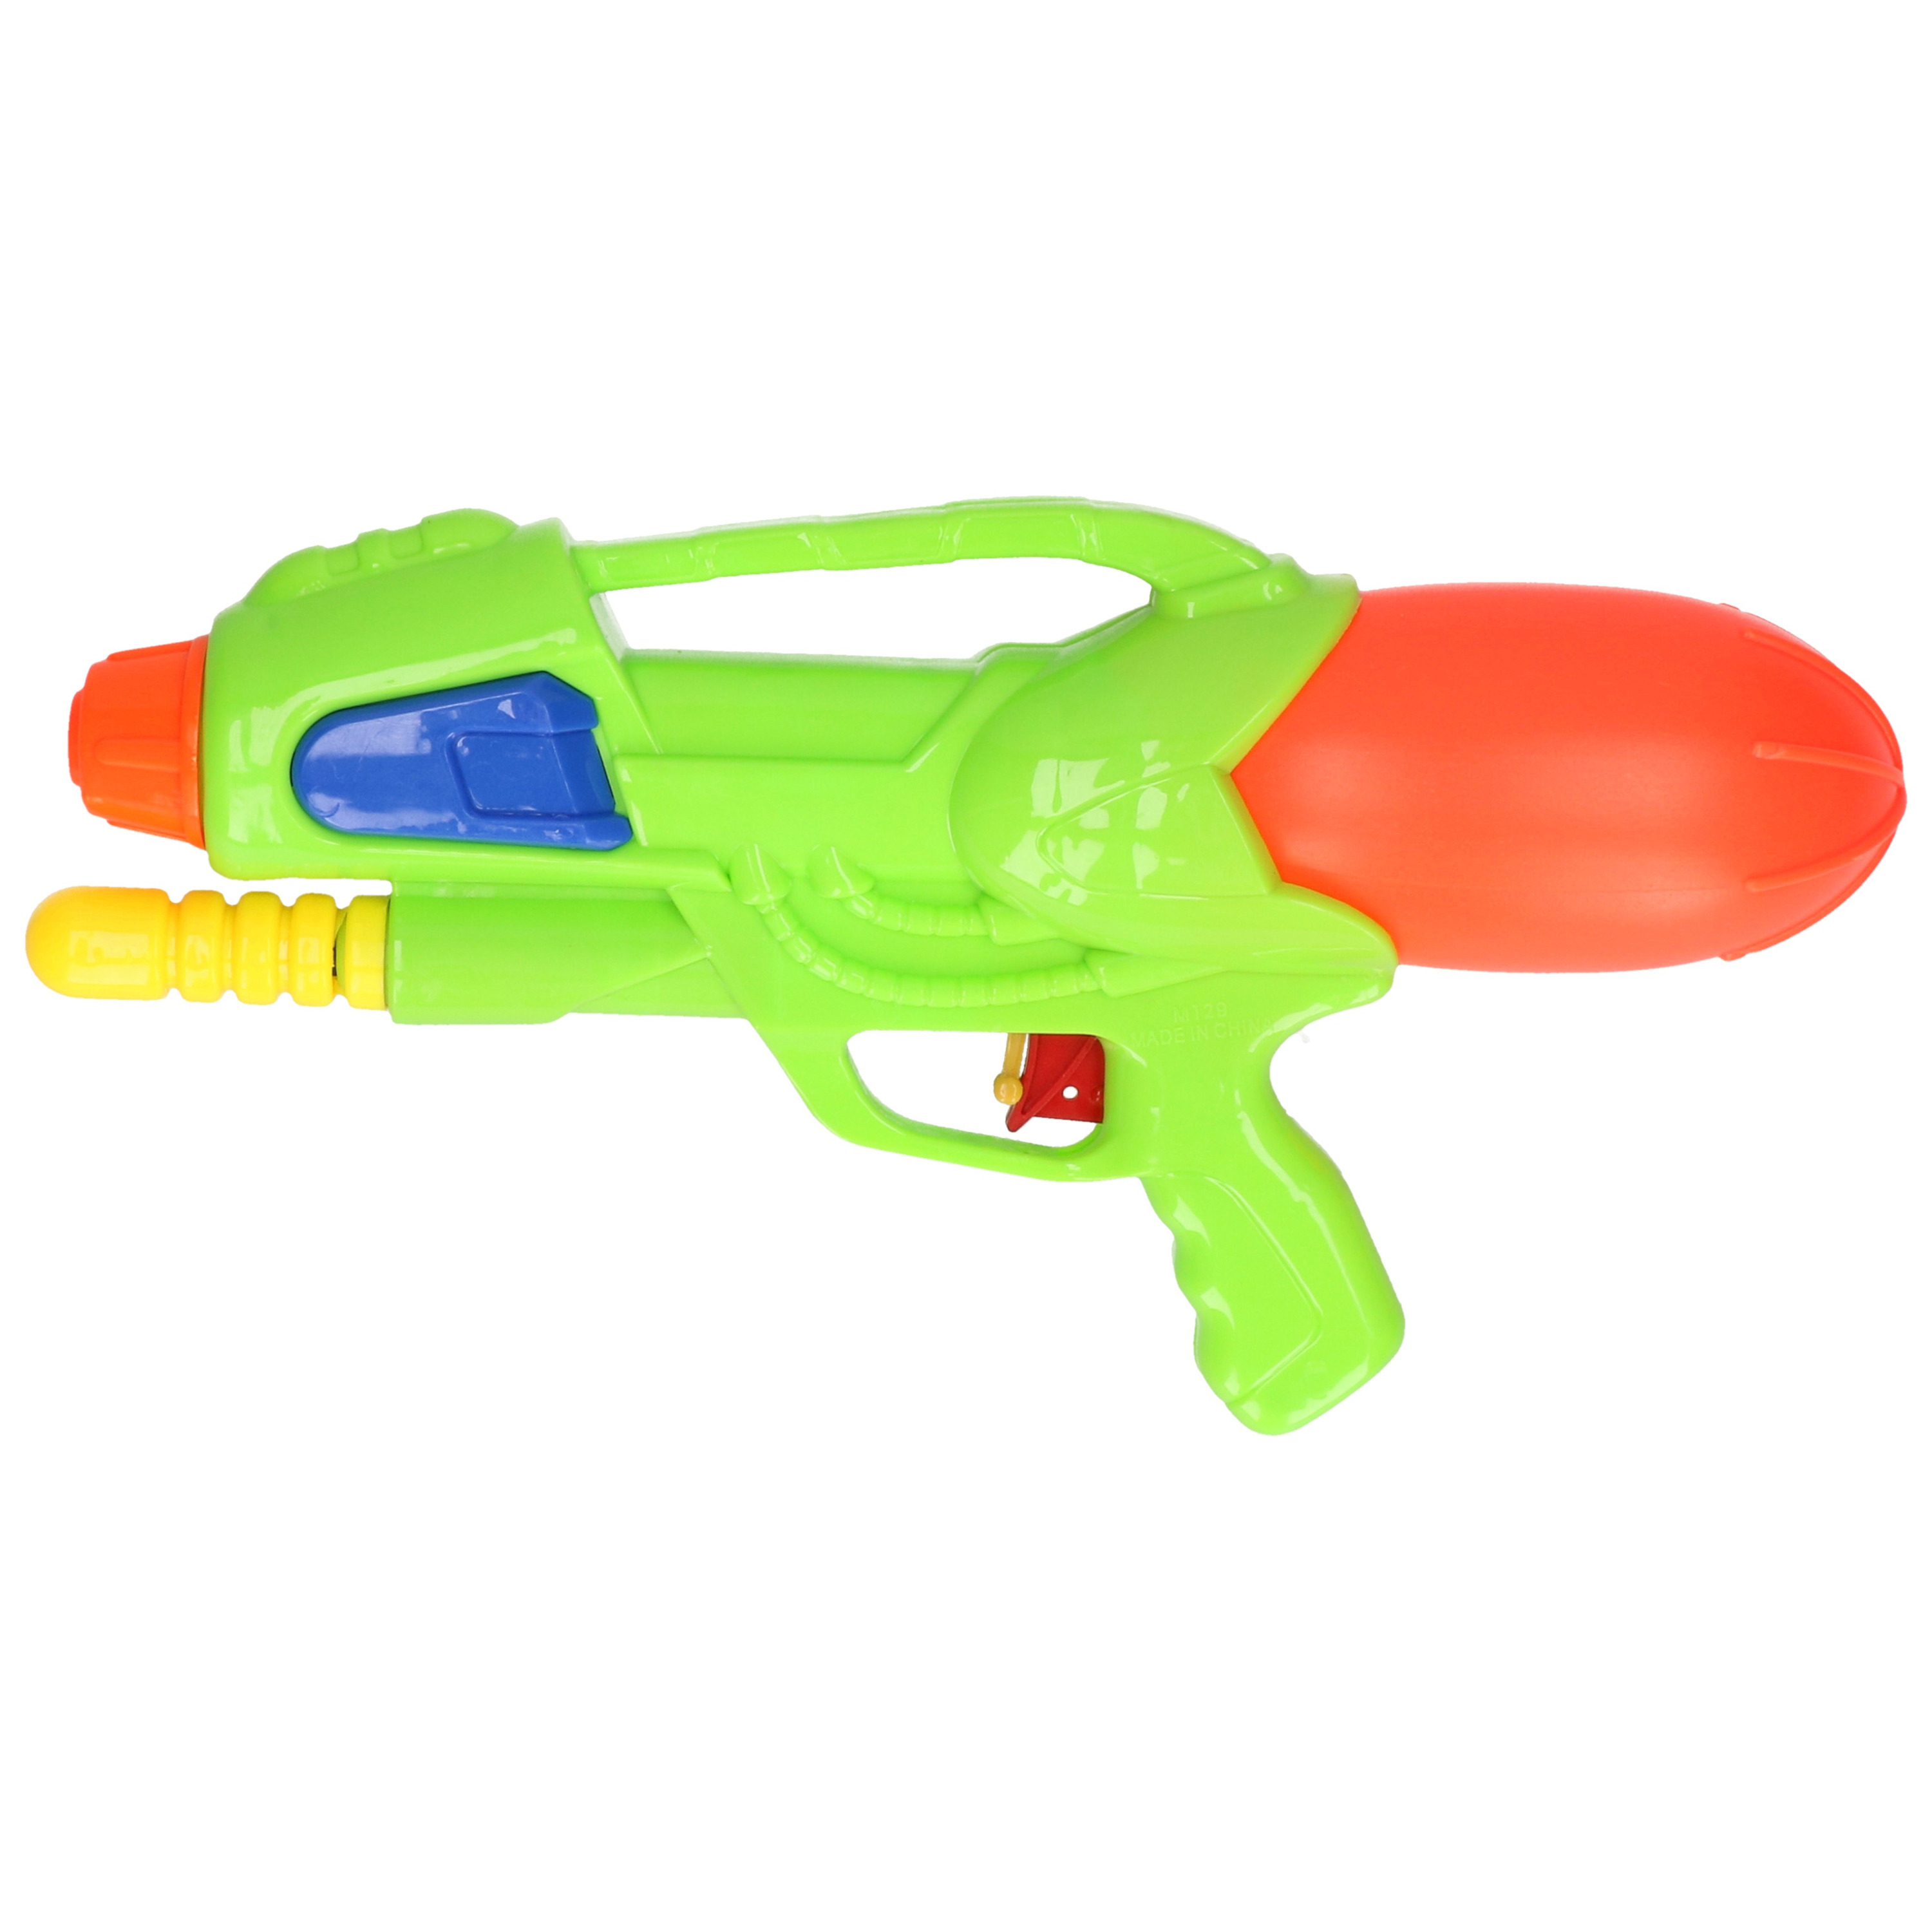 1x Waterpistolen/waterpistool groen van 30 cm kinderspeelgoed